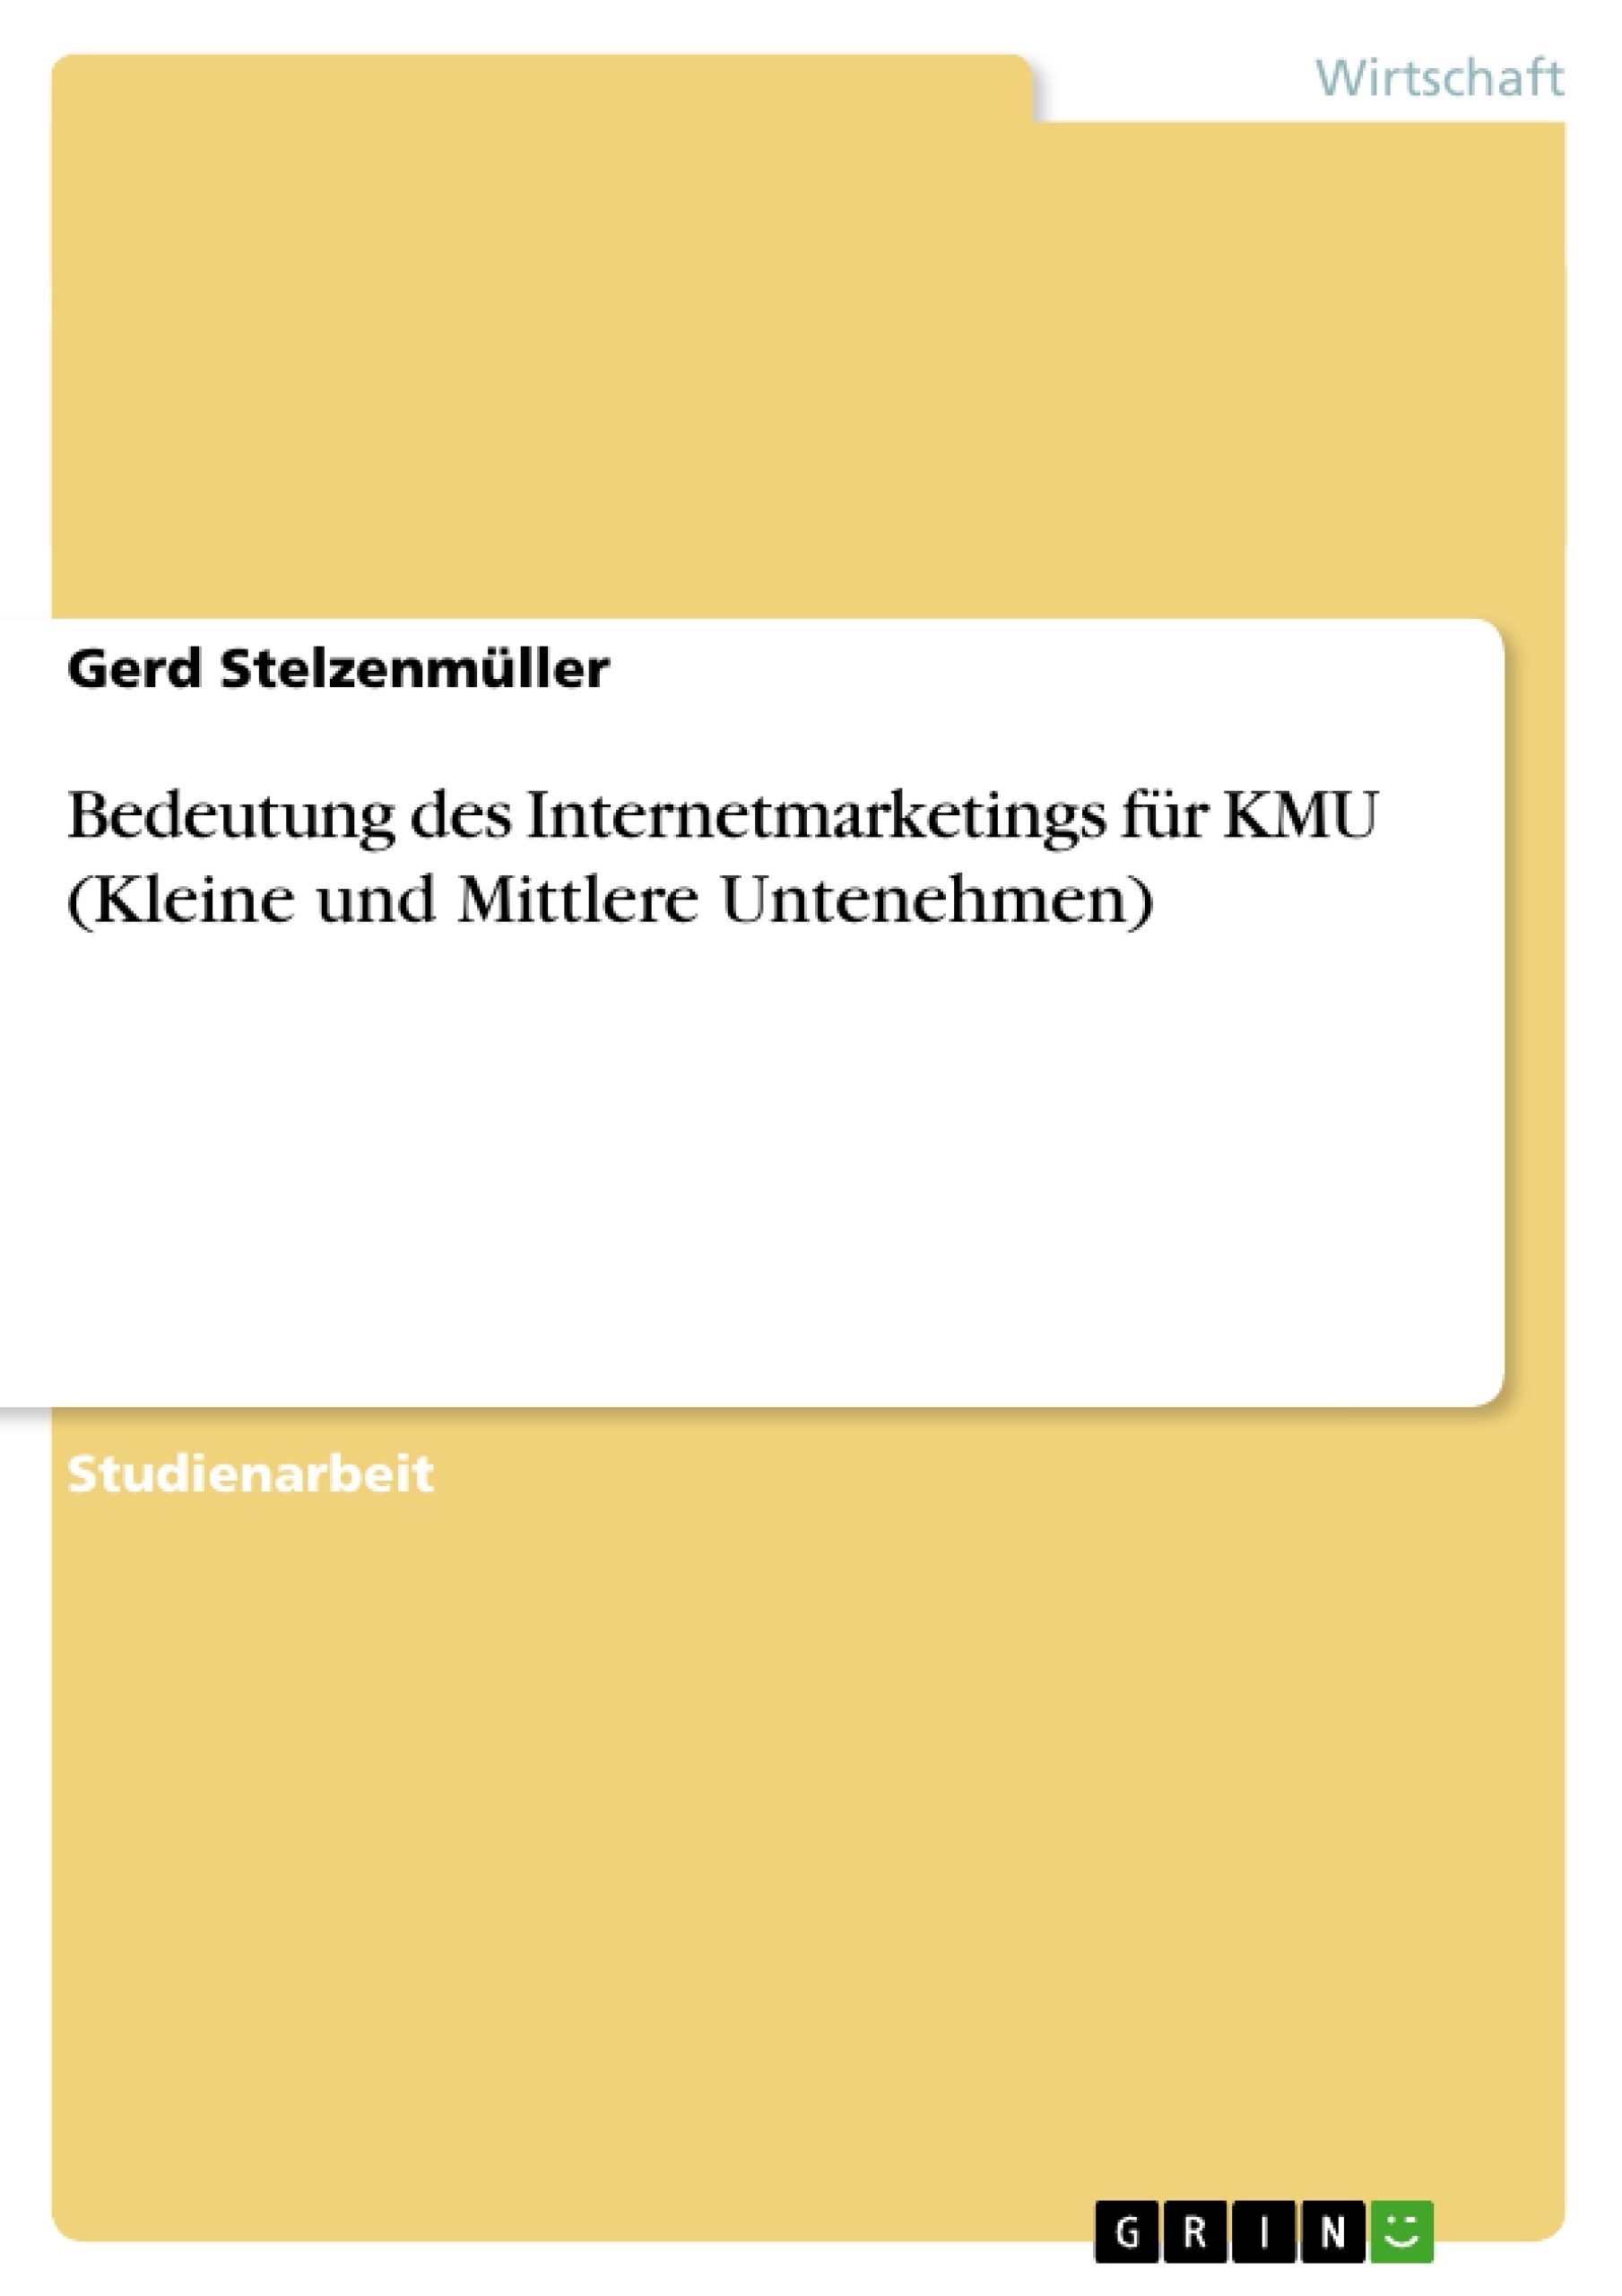 Title: Bedeutung des Internetmarketings für KMU (Kleine und Mittlere Untenehmen)